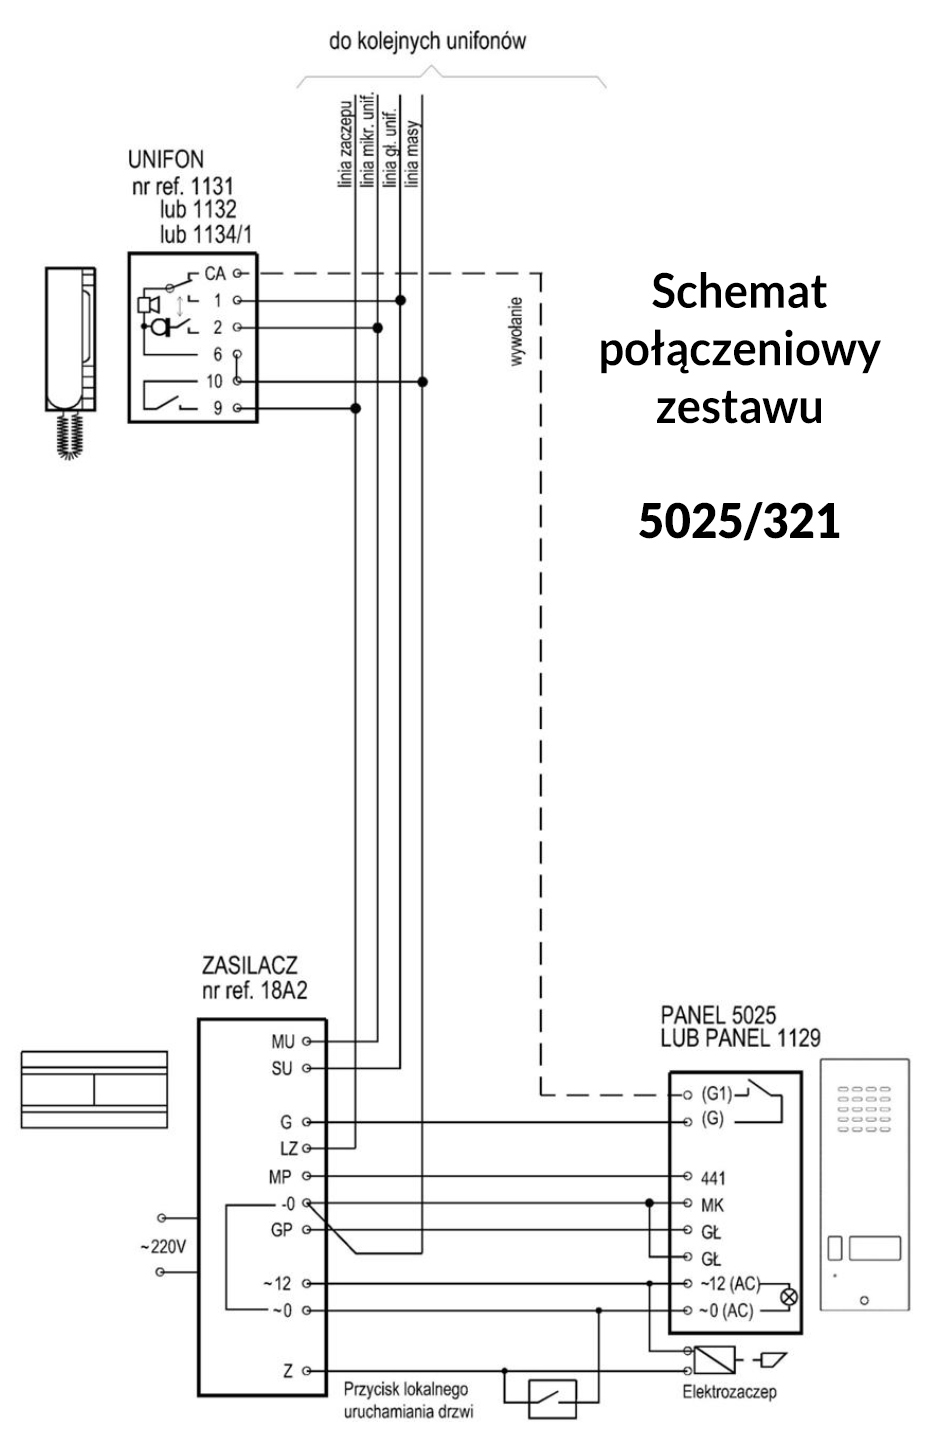 Schemat połączeniowy zestawu 5025/321